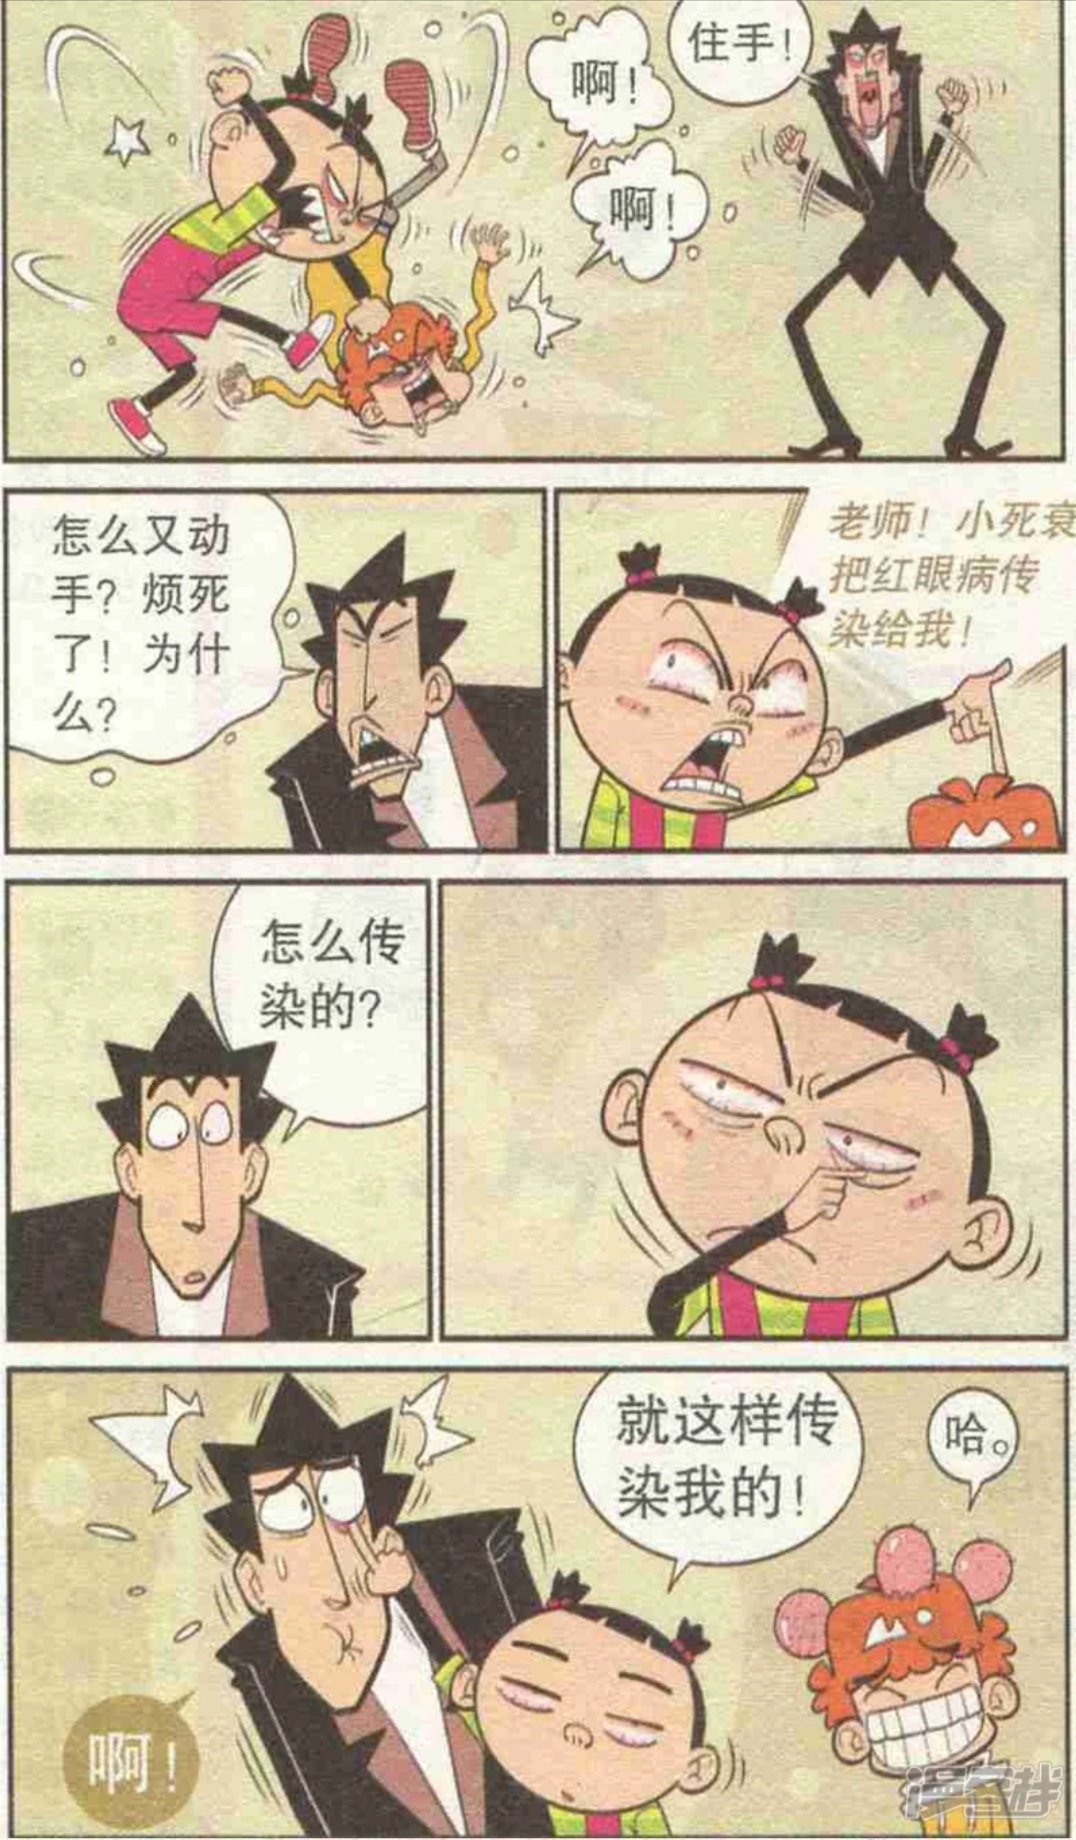 阿衰漫画，金老师炒股记（上）  金老师迷上炒股